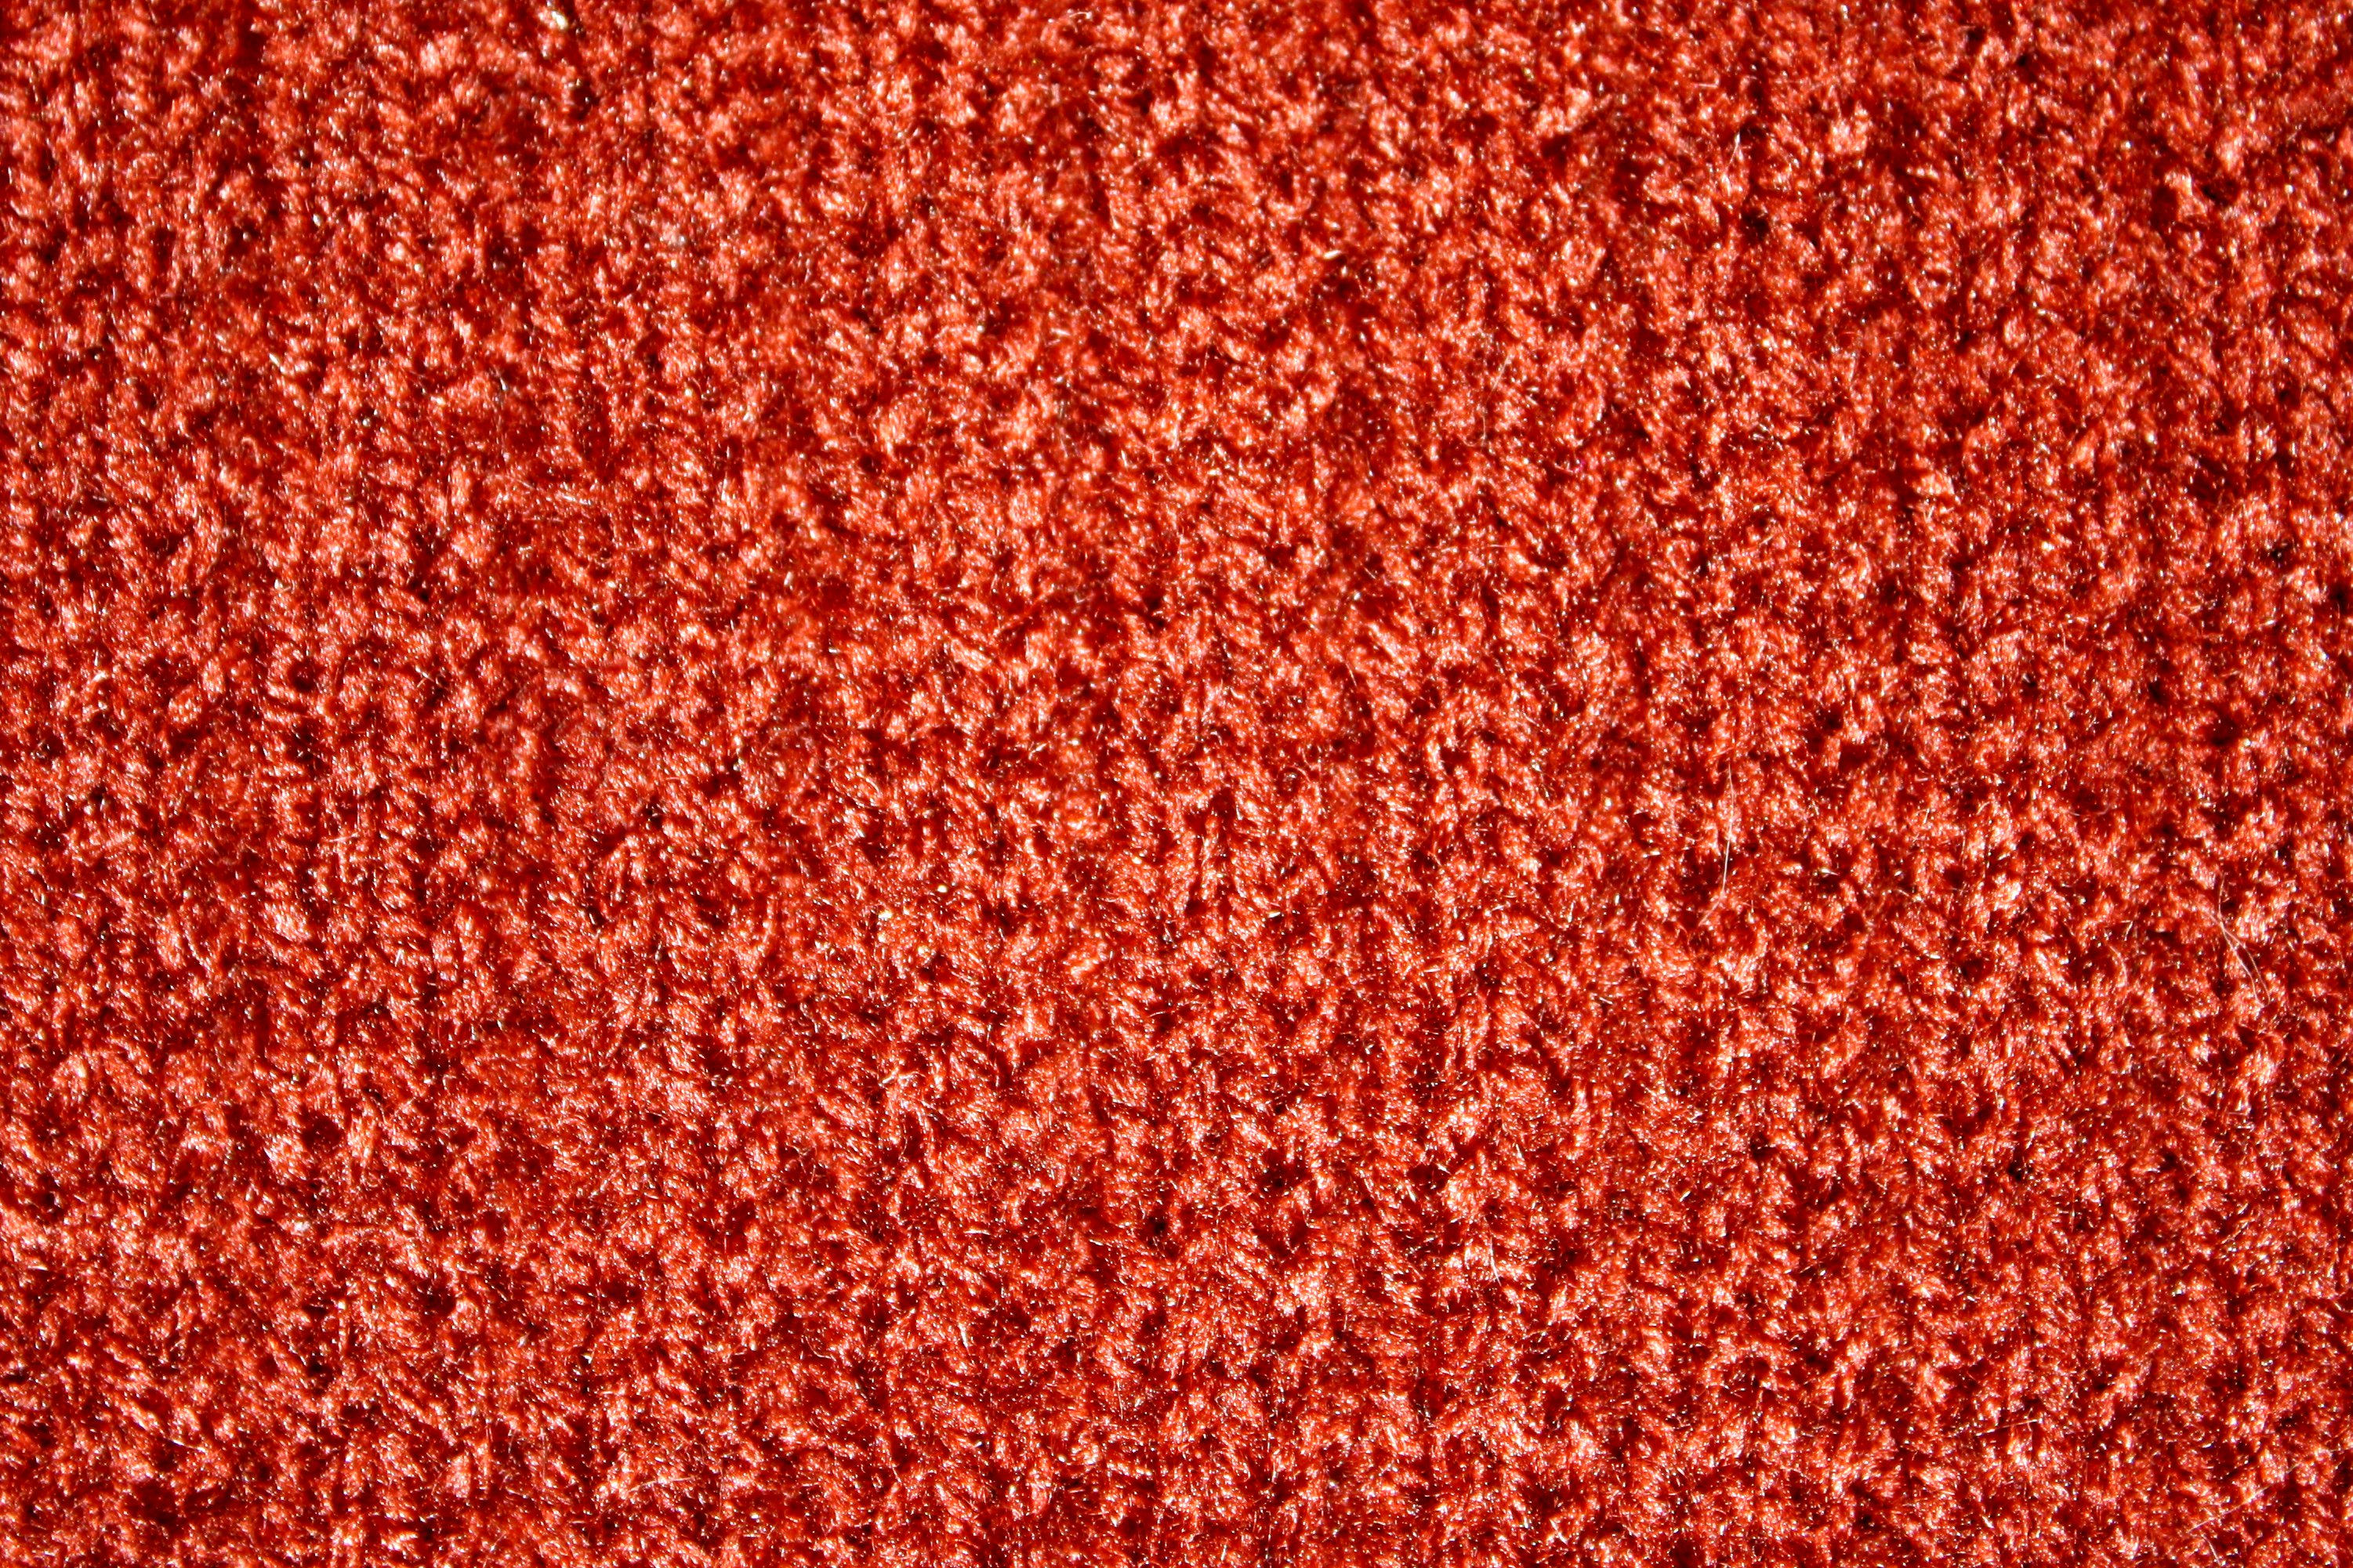 Brown Knit Texture Picture Free Photograph Photos Public Domain Images, Photos, Reviews